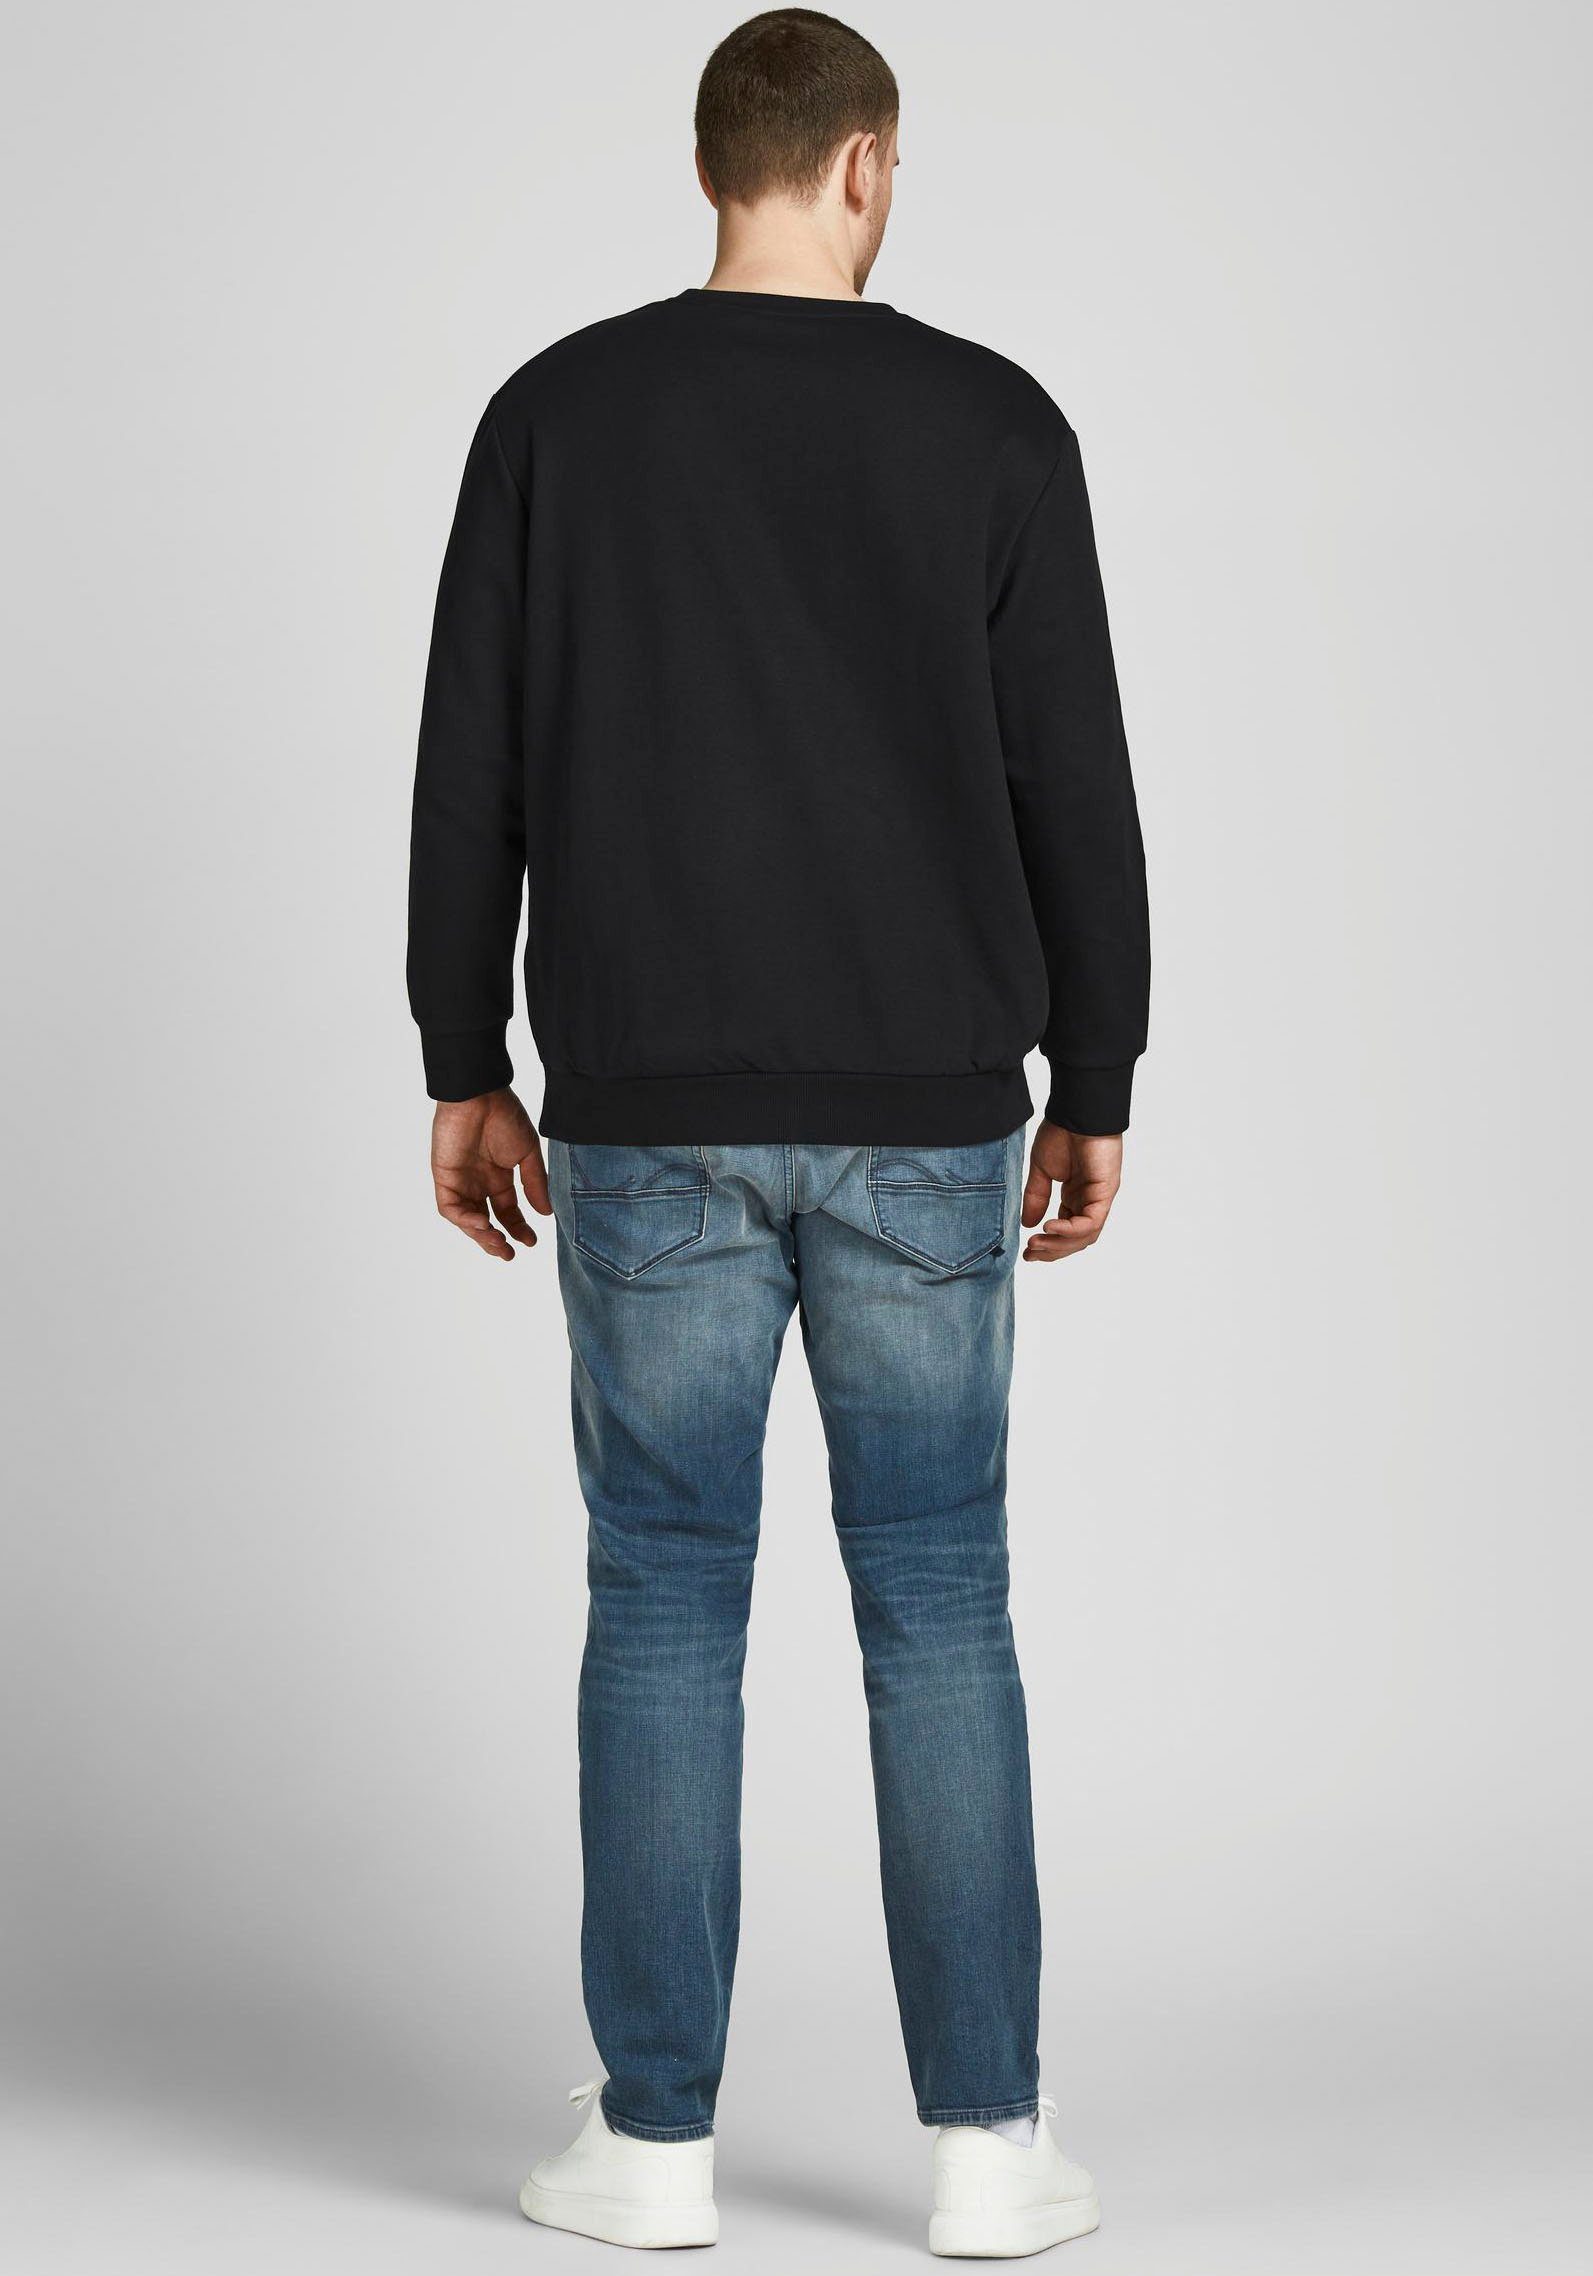 Jack & Jones PlusSize NECK SWEAT Sweatshirt schwarz BASIC (Packung) CREW